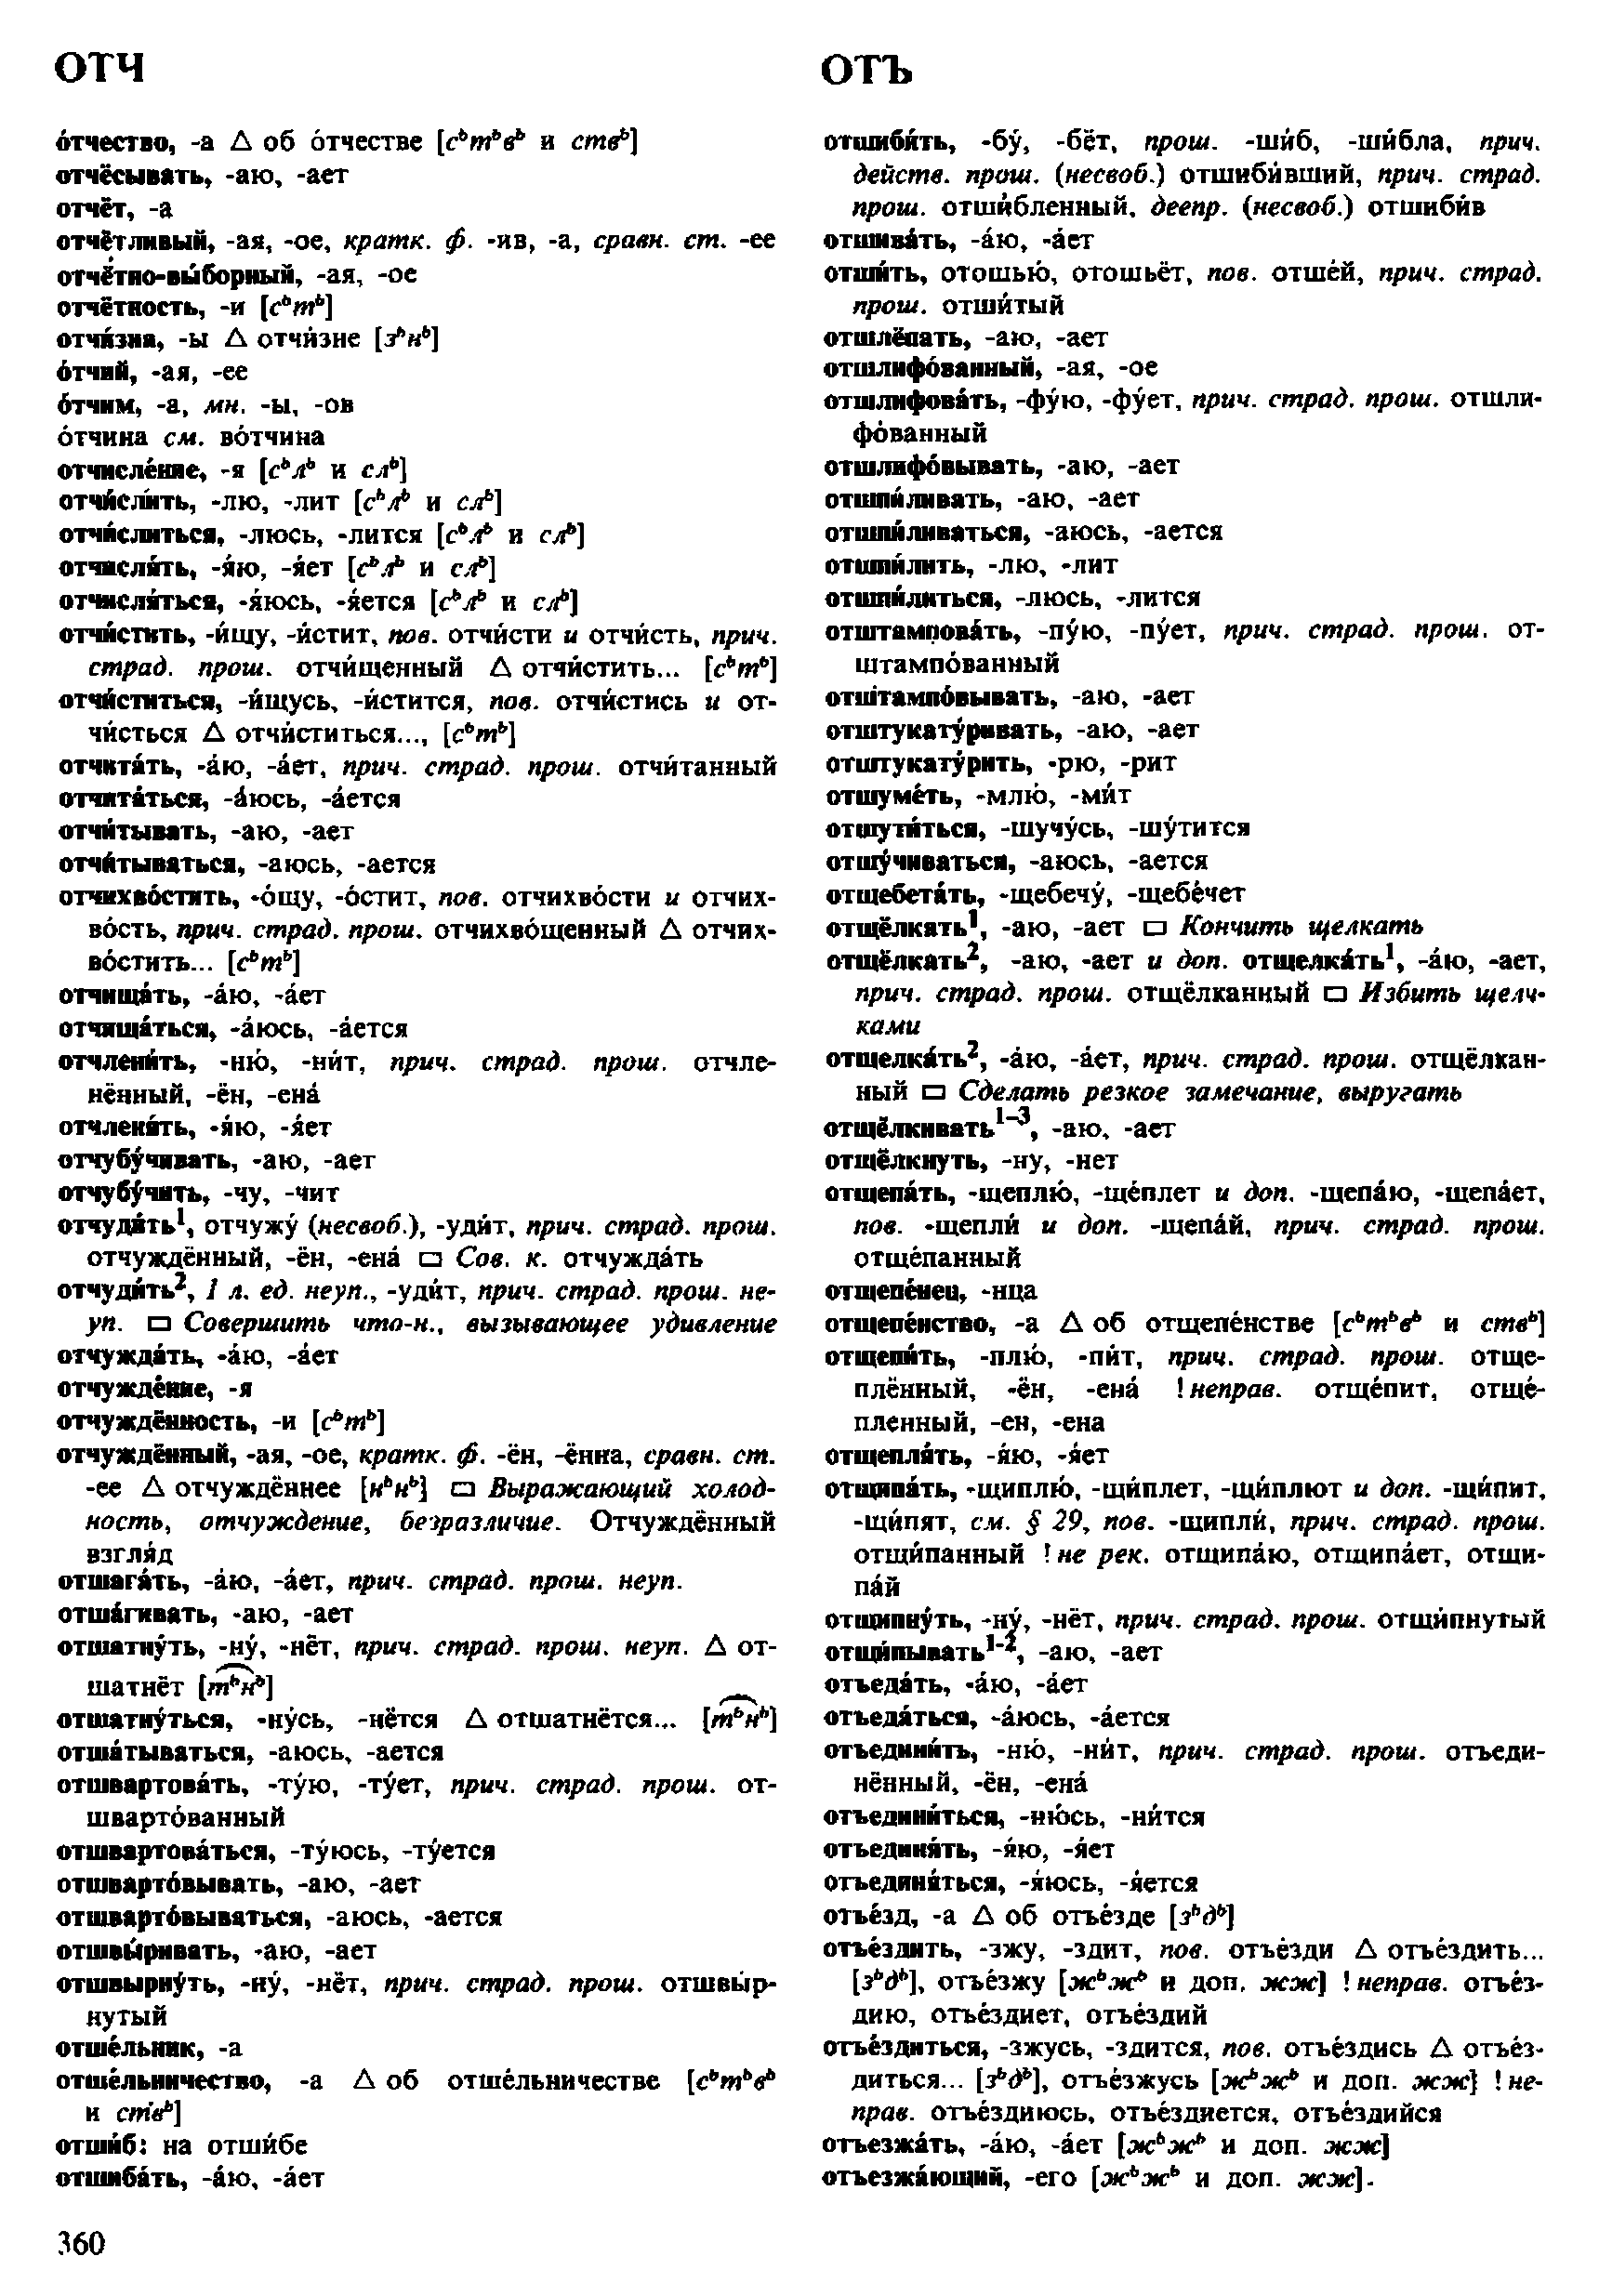 Фотокопия pdf / скан страницы 360 орфоэпического словаря под редакцией Аванесова (4 издание, 1988 год)